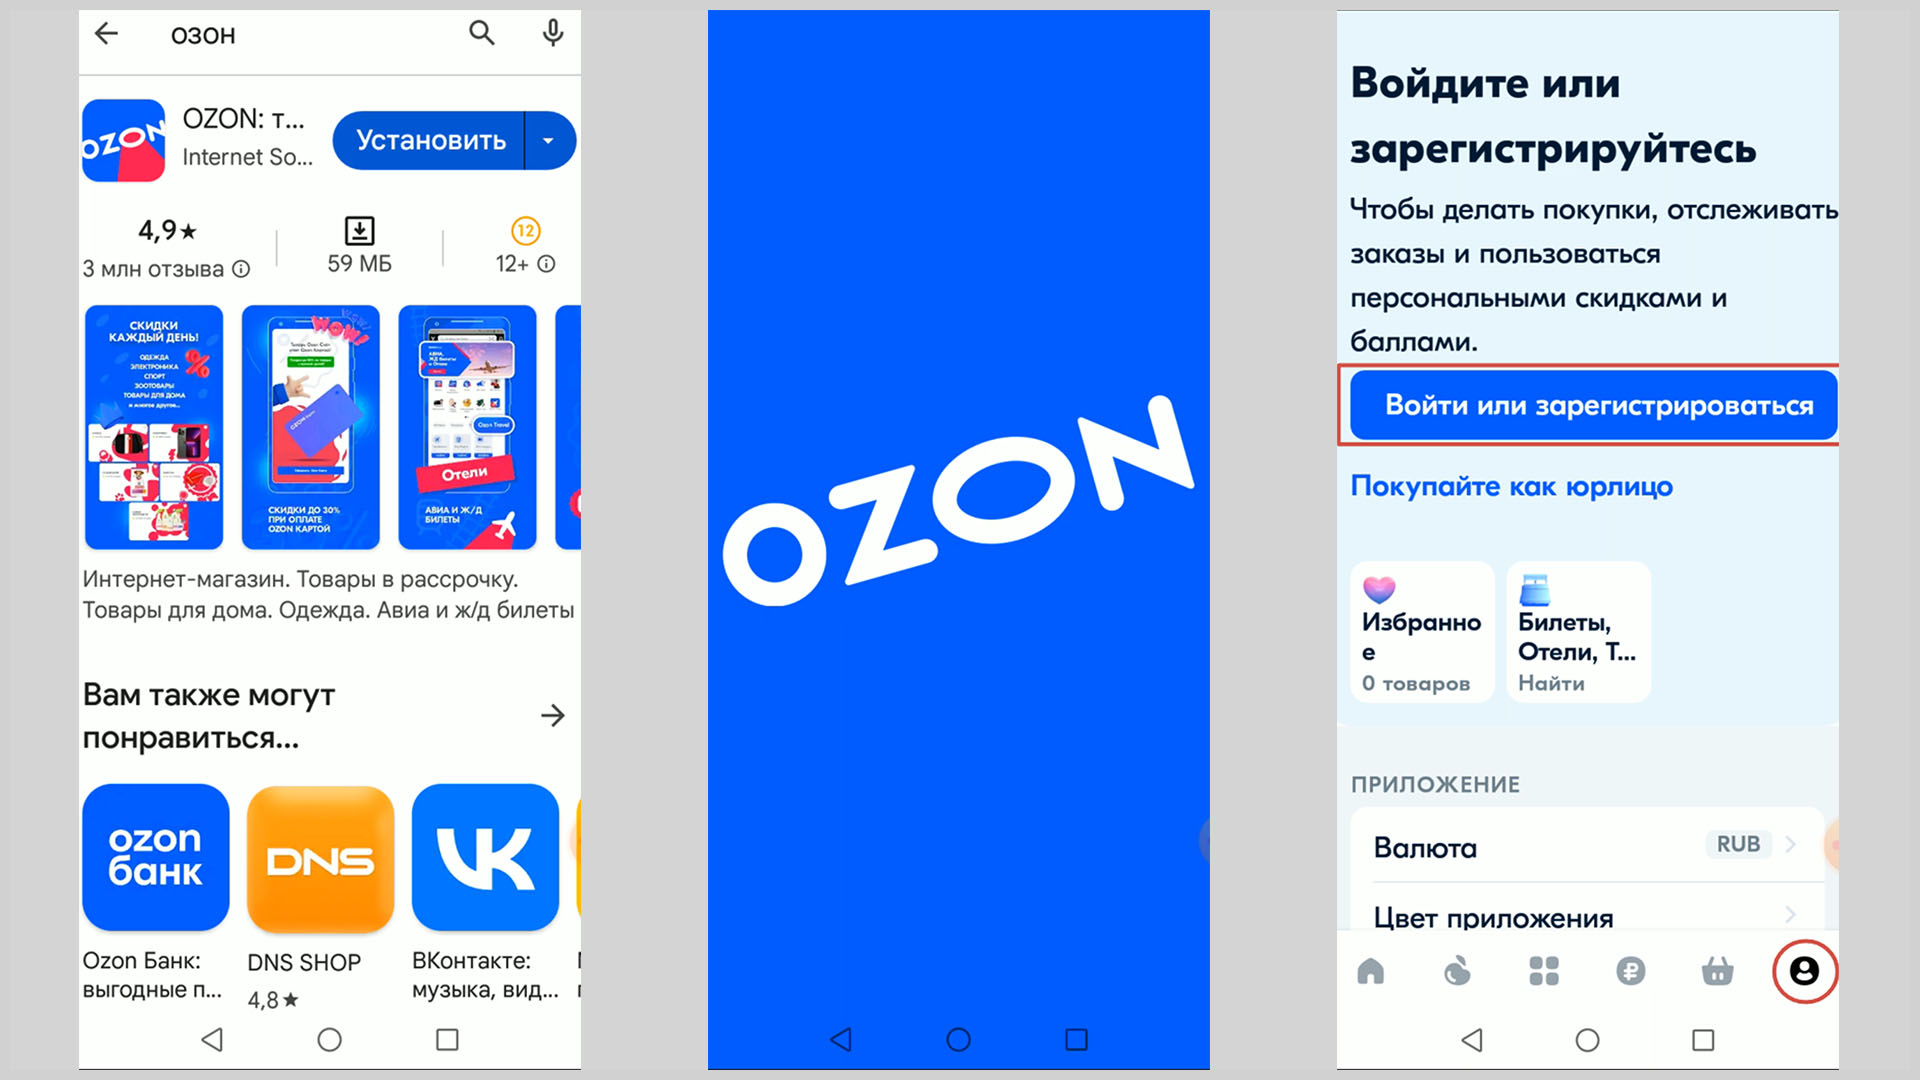 Скриншоты экрана смартфона иллюстрирующие установку и запуск приложения OZON.